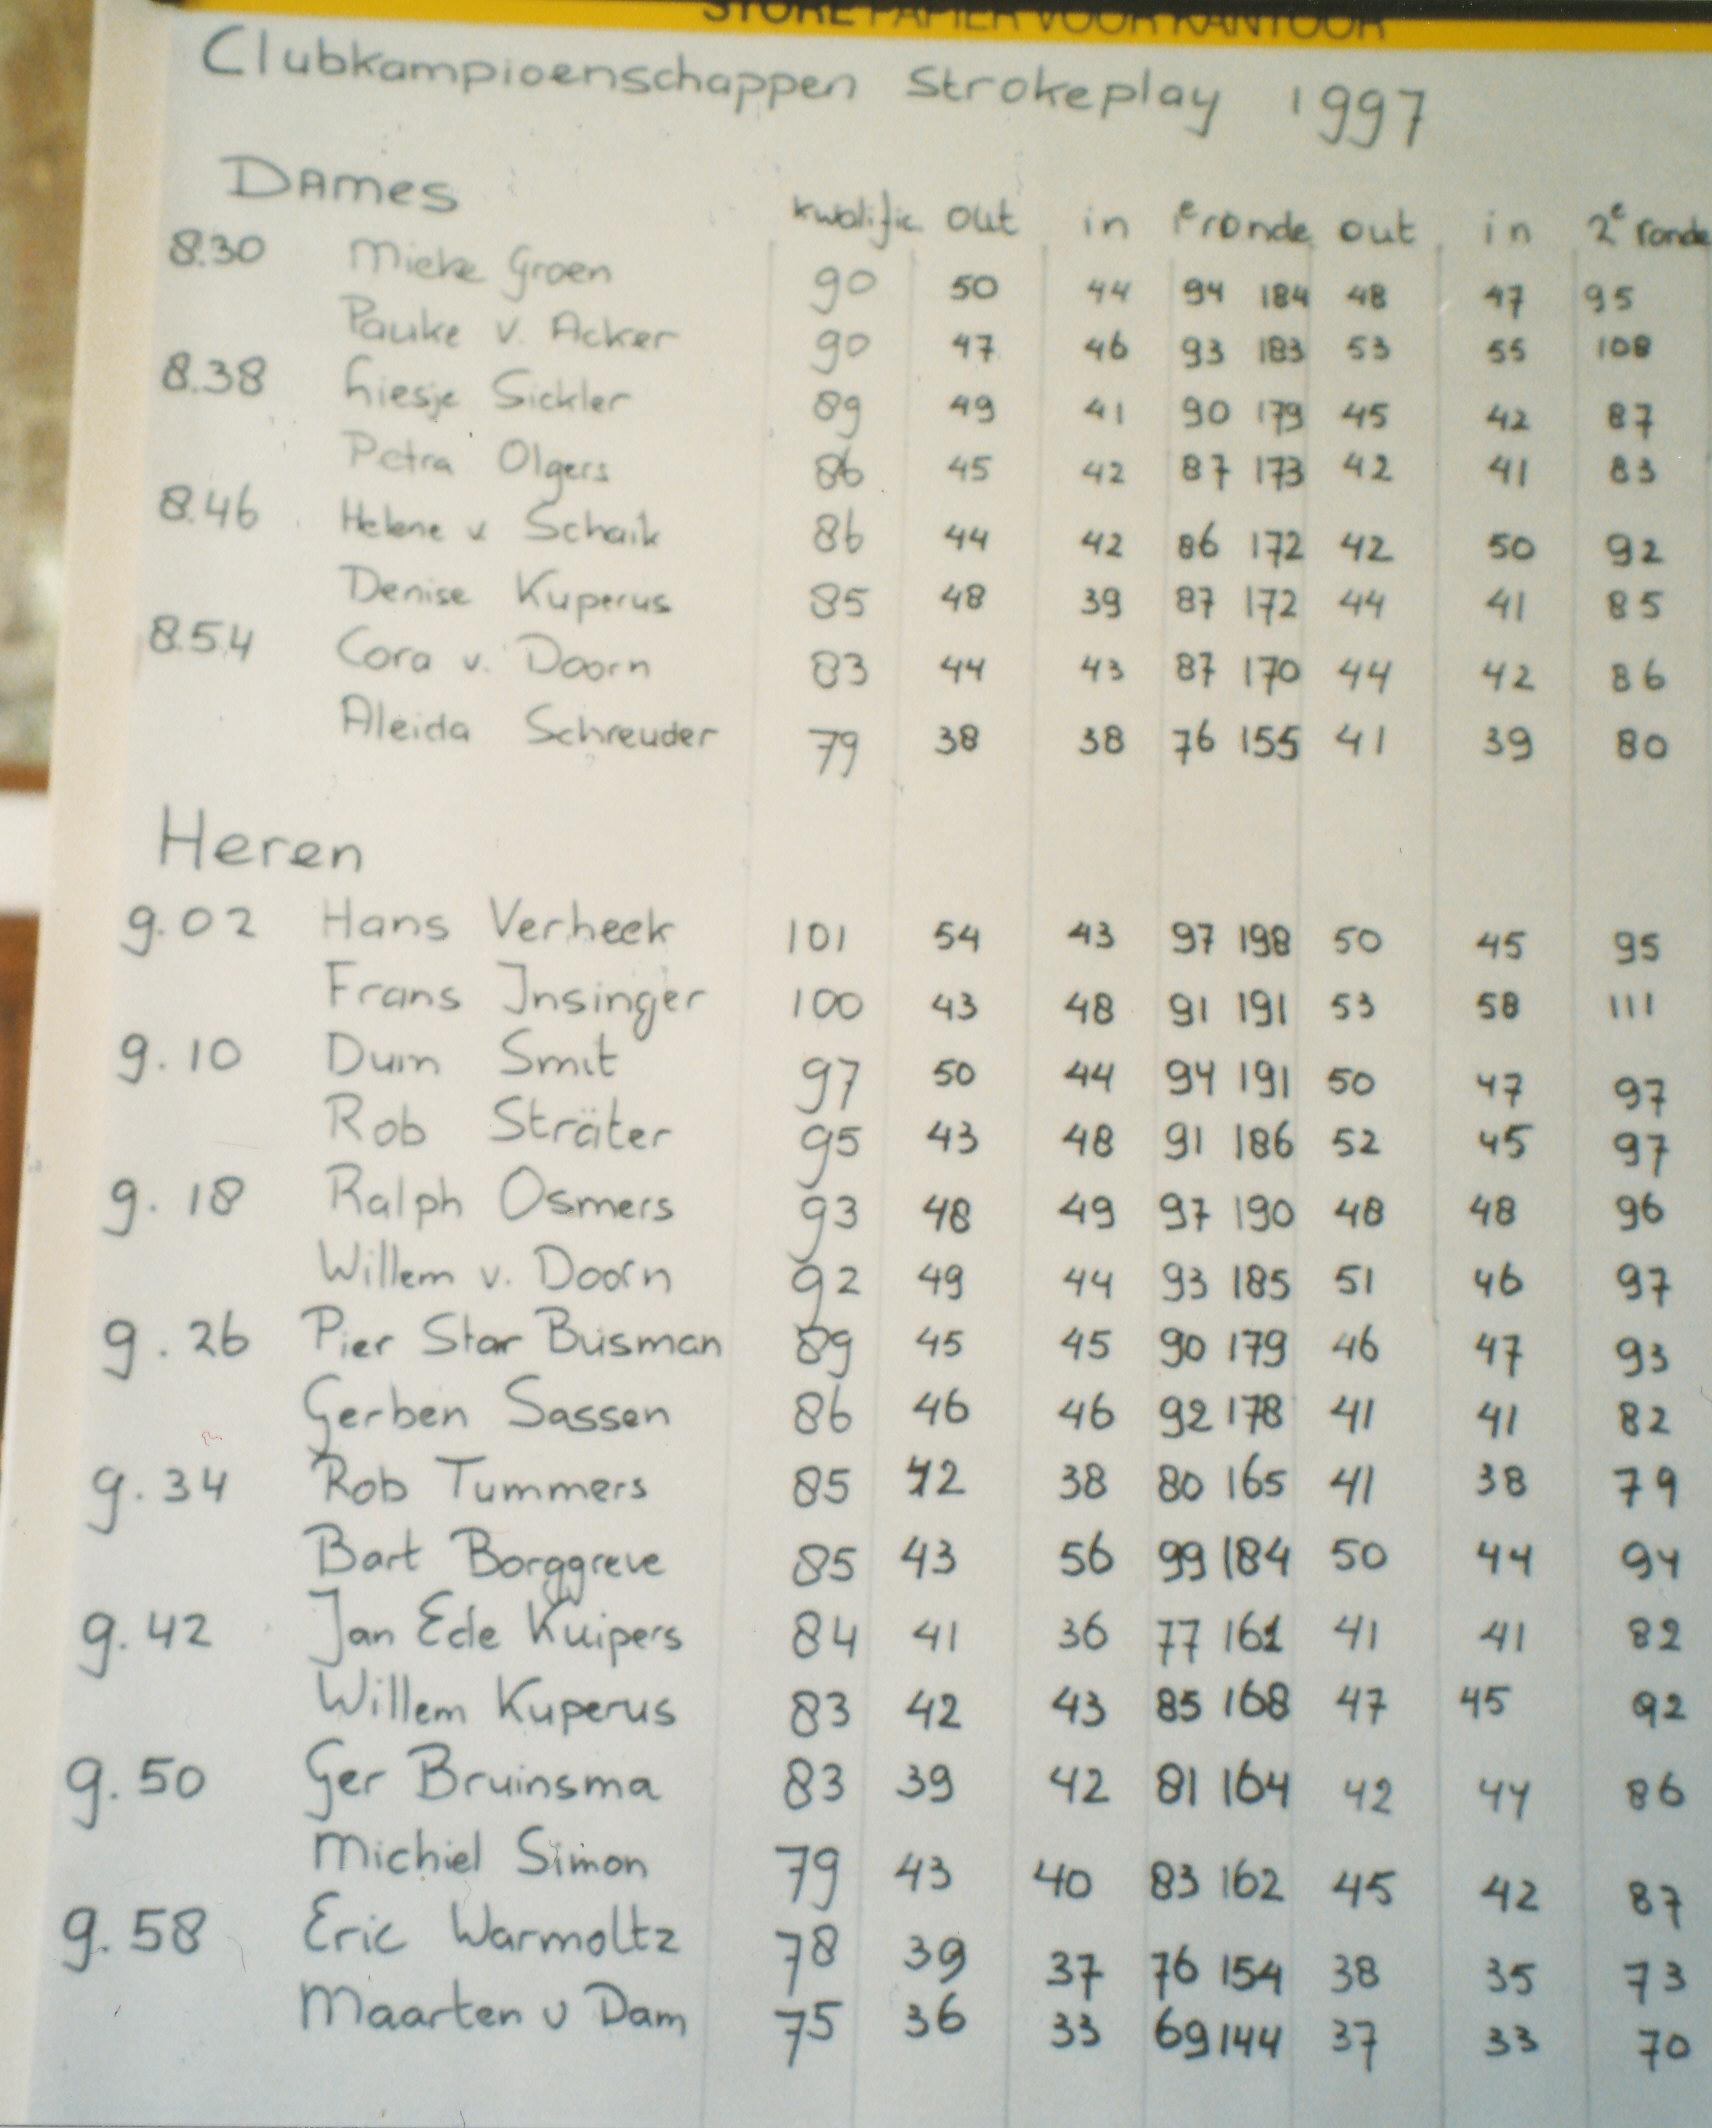 1997 strokeplay kampioensch b